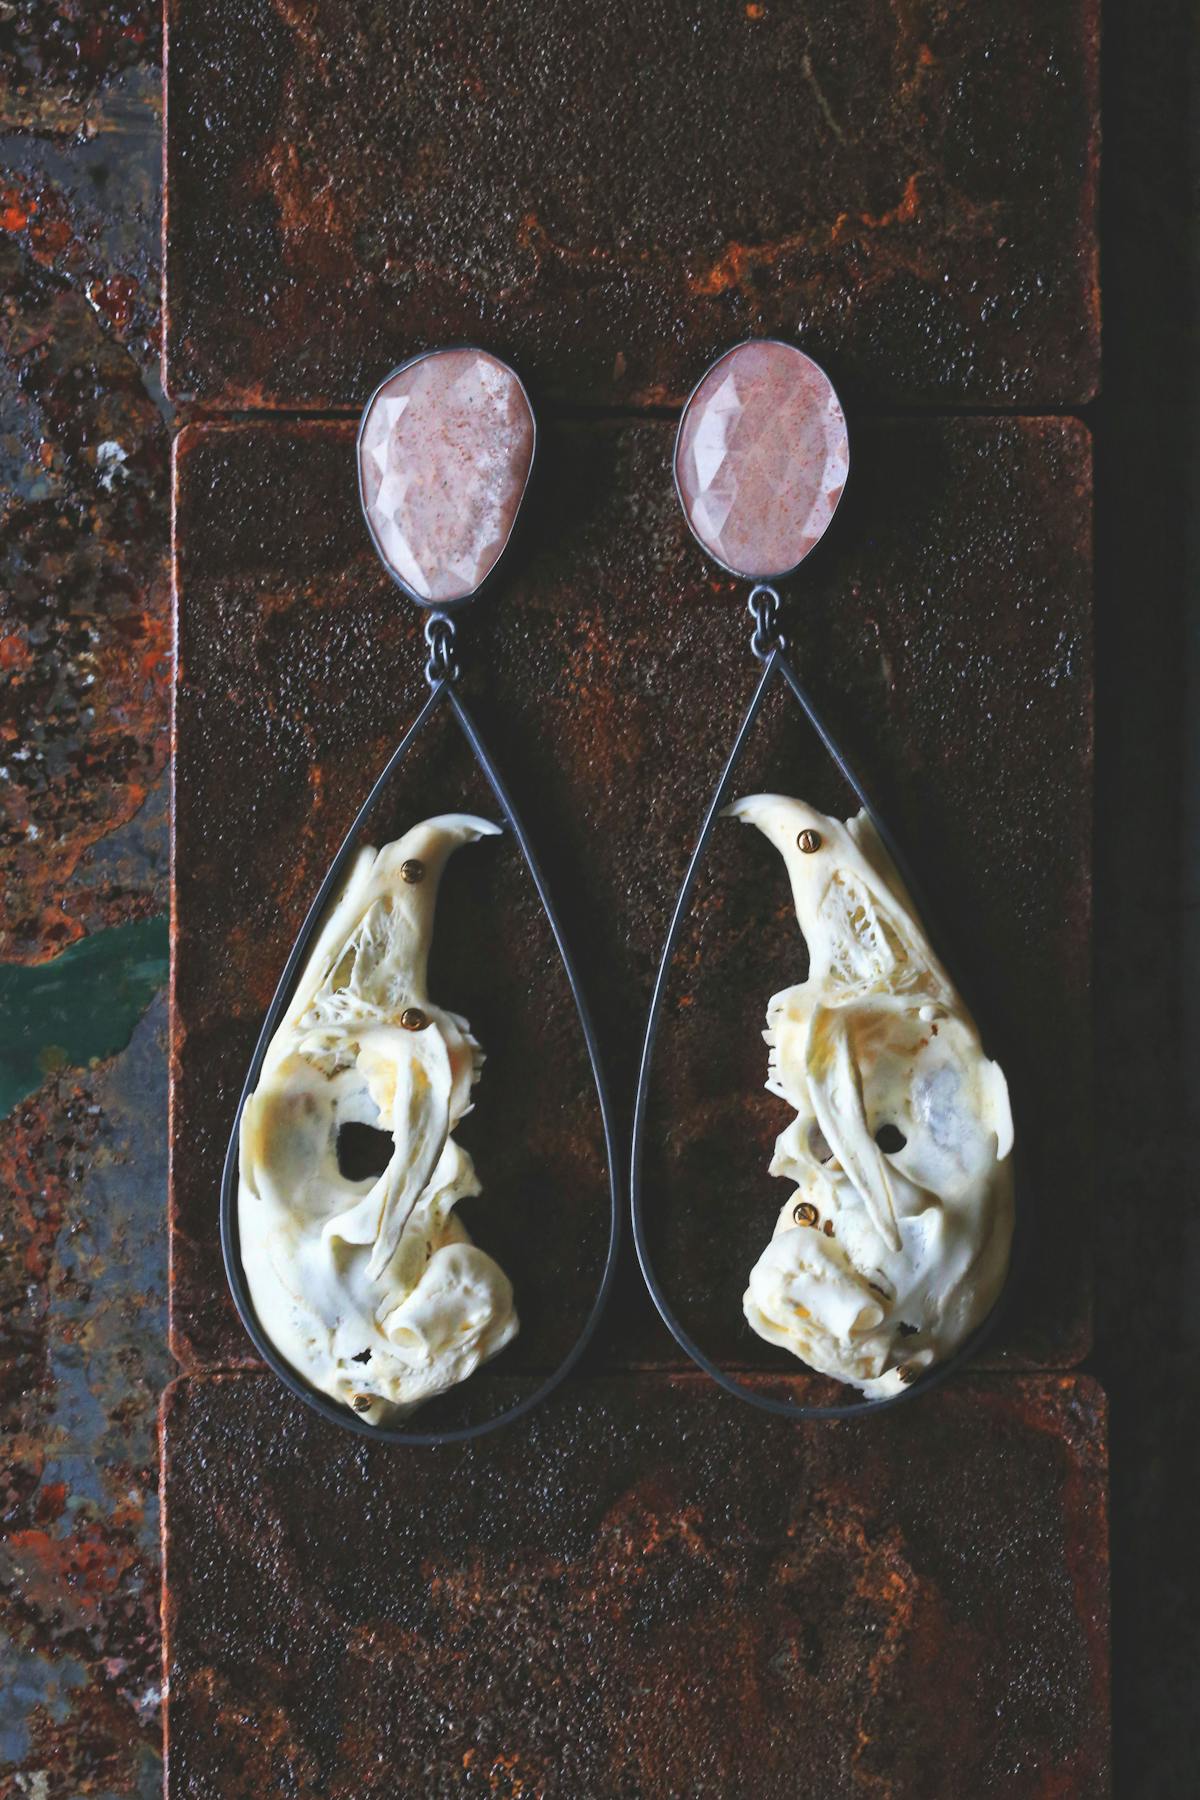 hoop earrings with rabbit skulls and gemstones